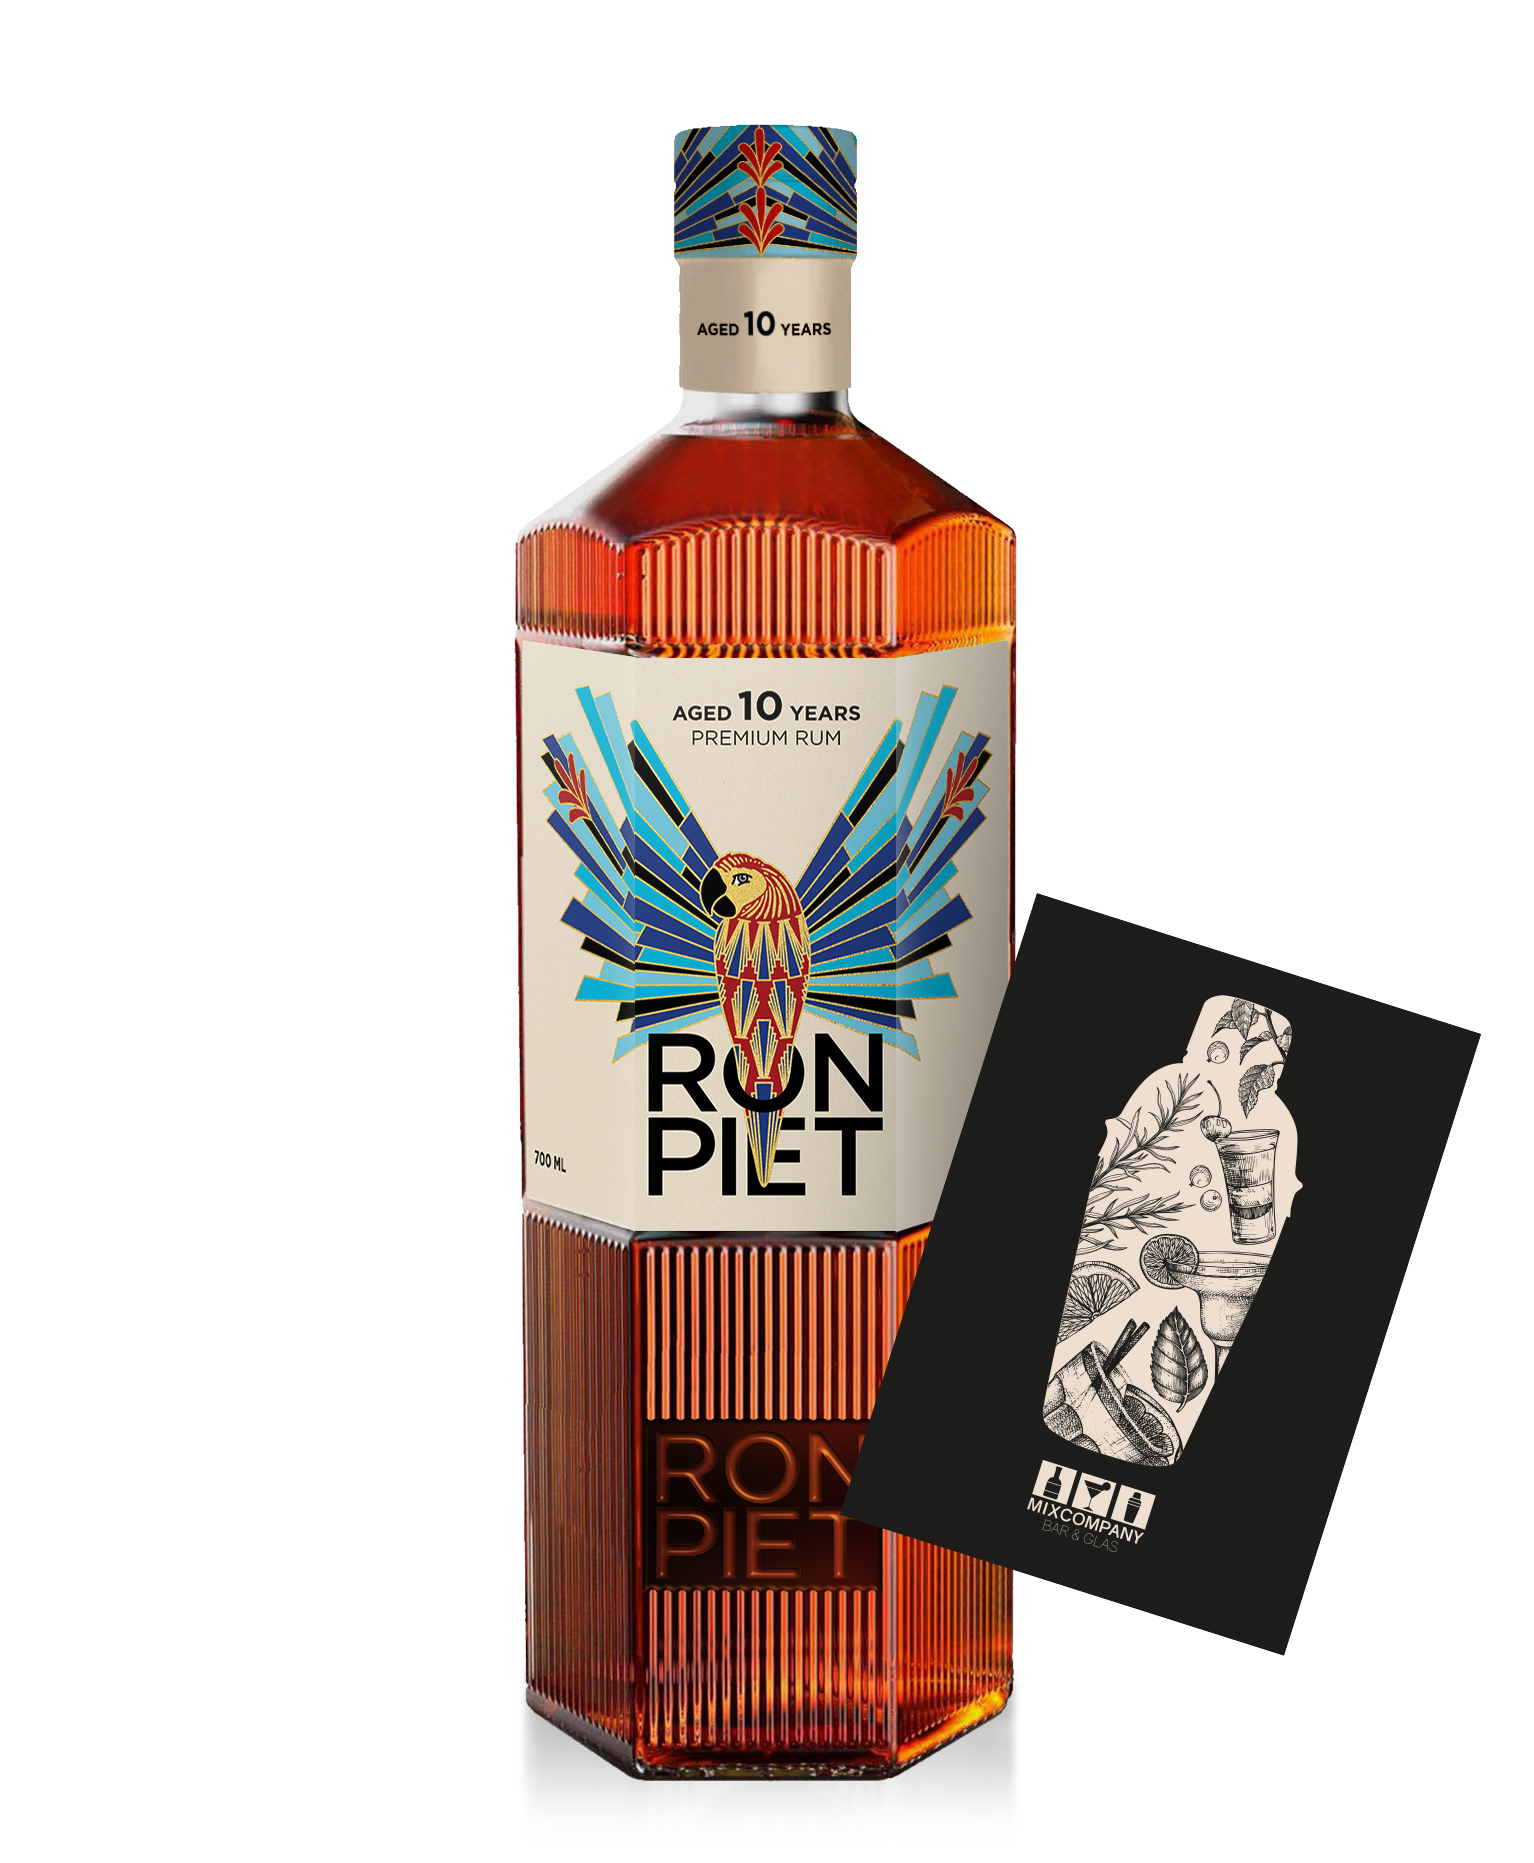 Ron Piet Premium Rum aged 10 years // 0,7L (40% Vol.)- [Enthält Sulfite]